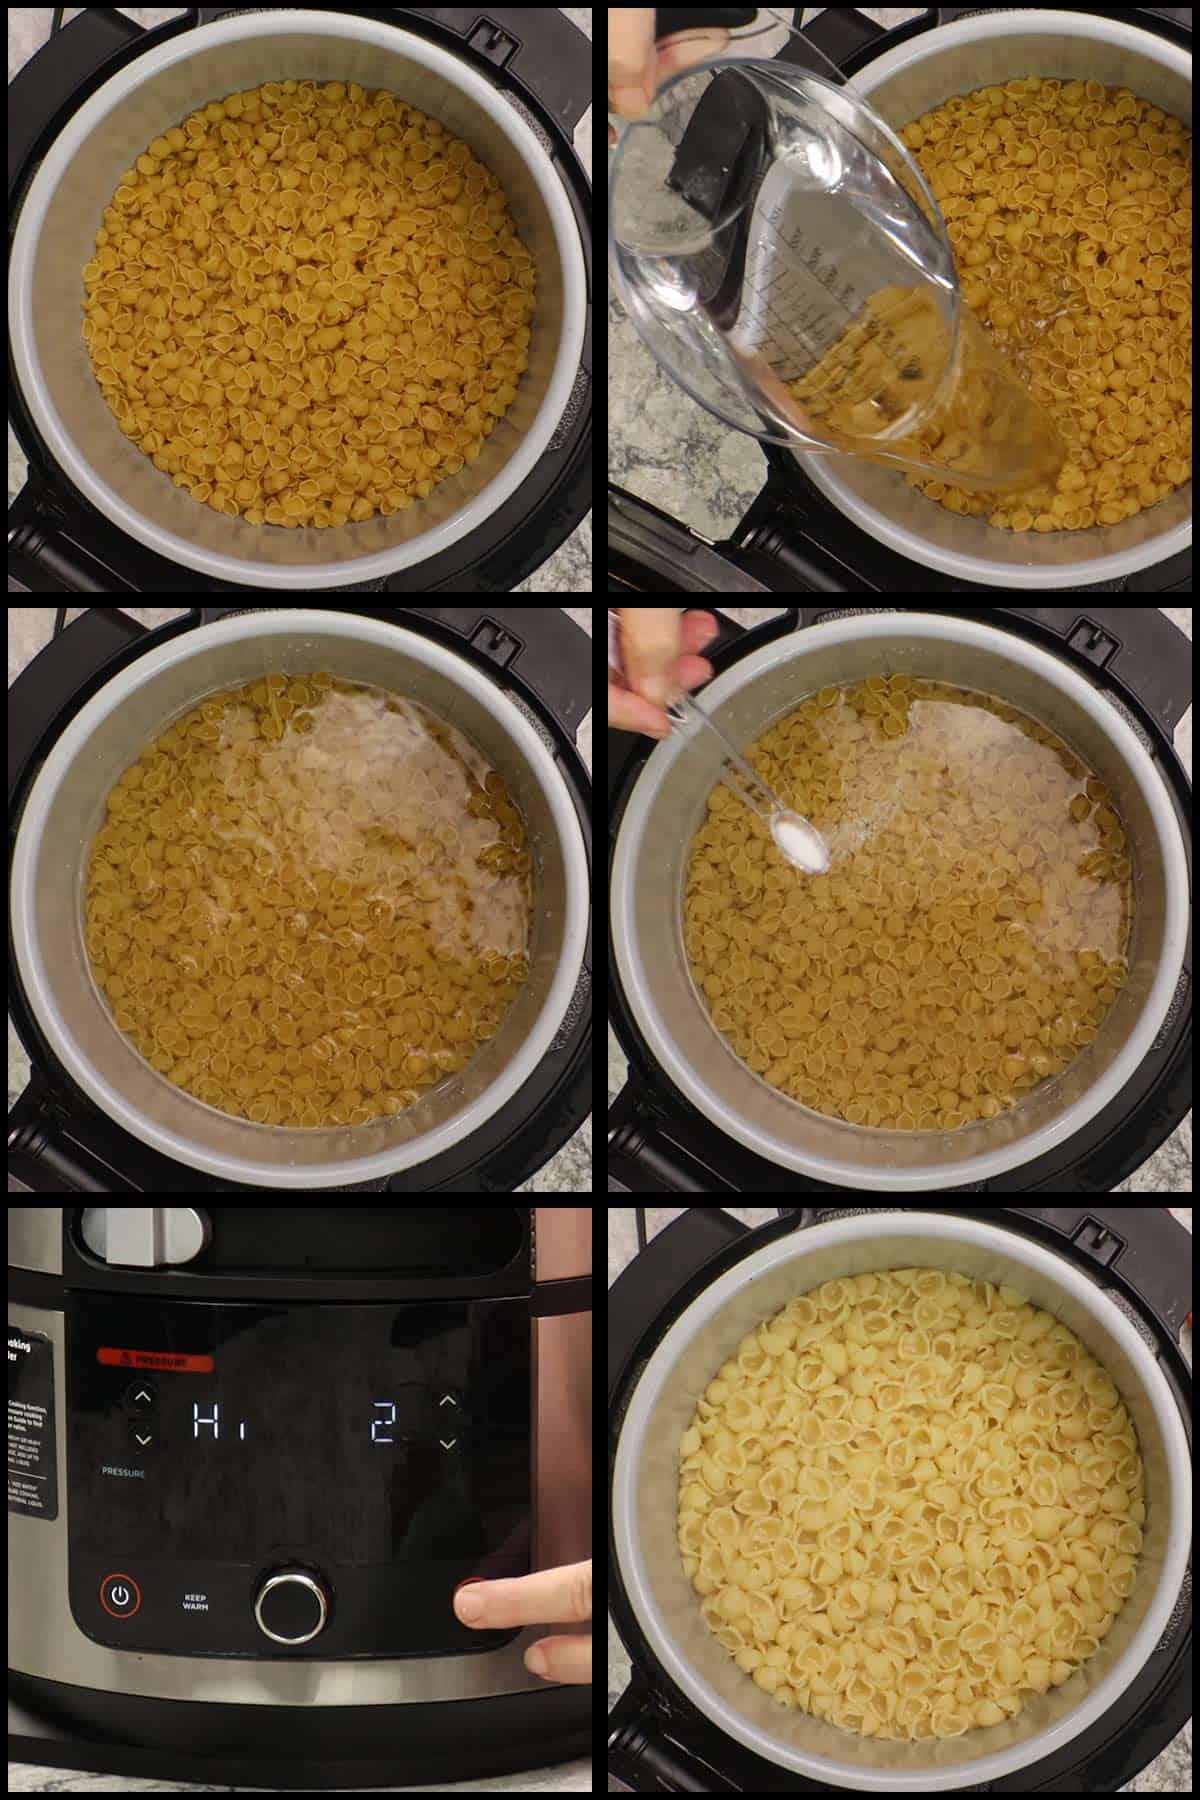 Pressure cooking pasta for pasta salad.